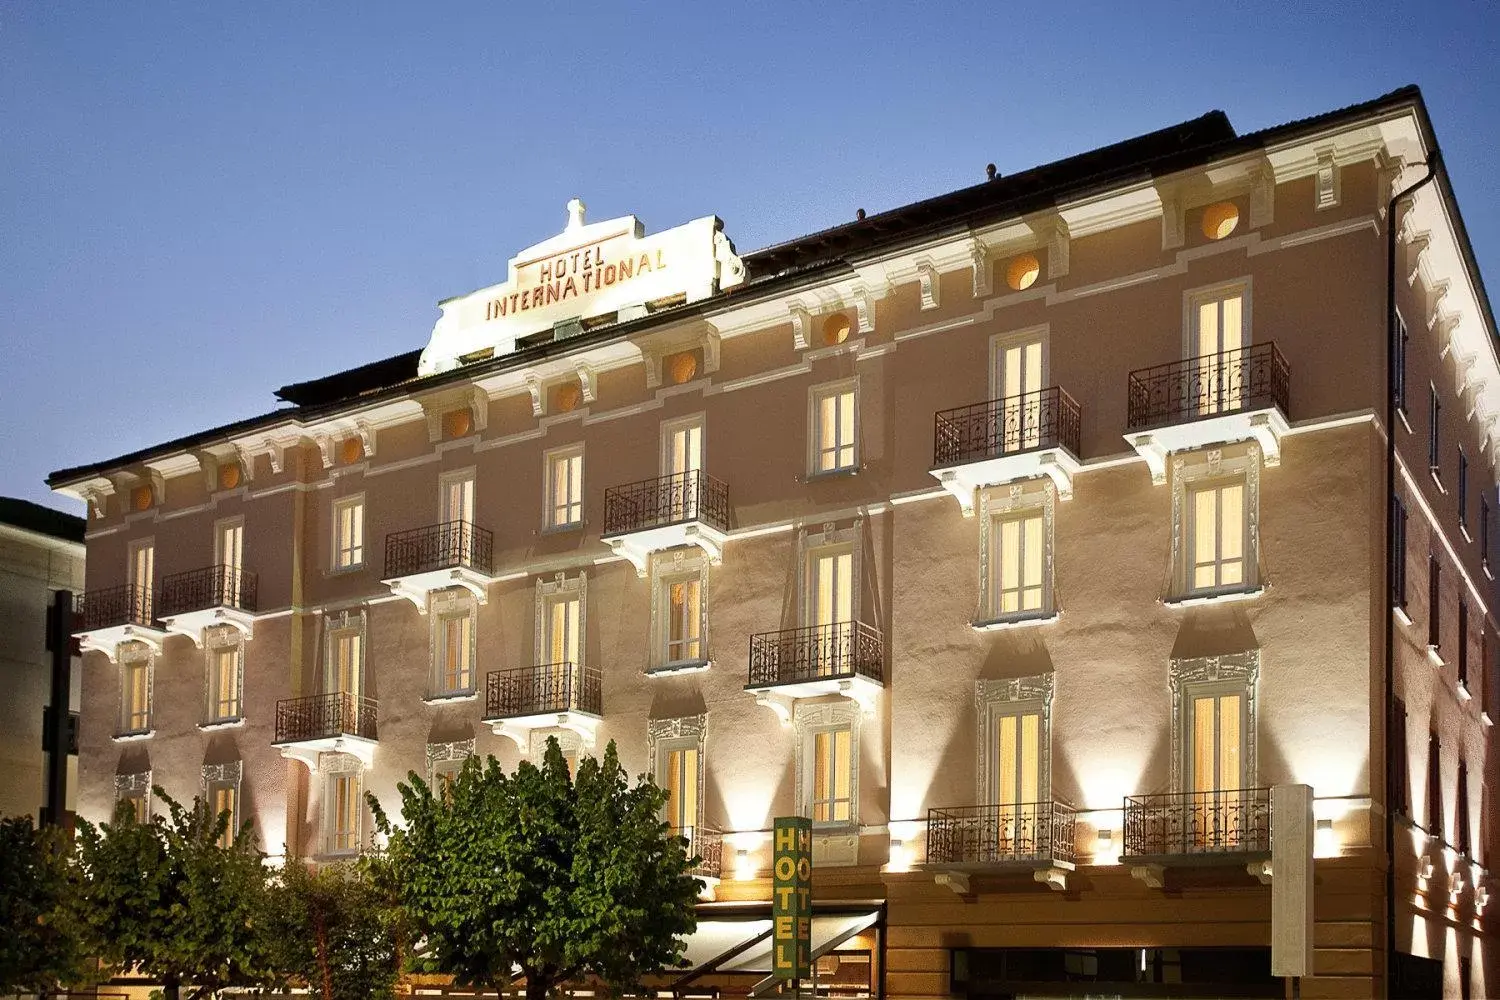 Facade/entrance, Property Building in Hotel Internazionale Bellinzona